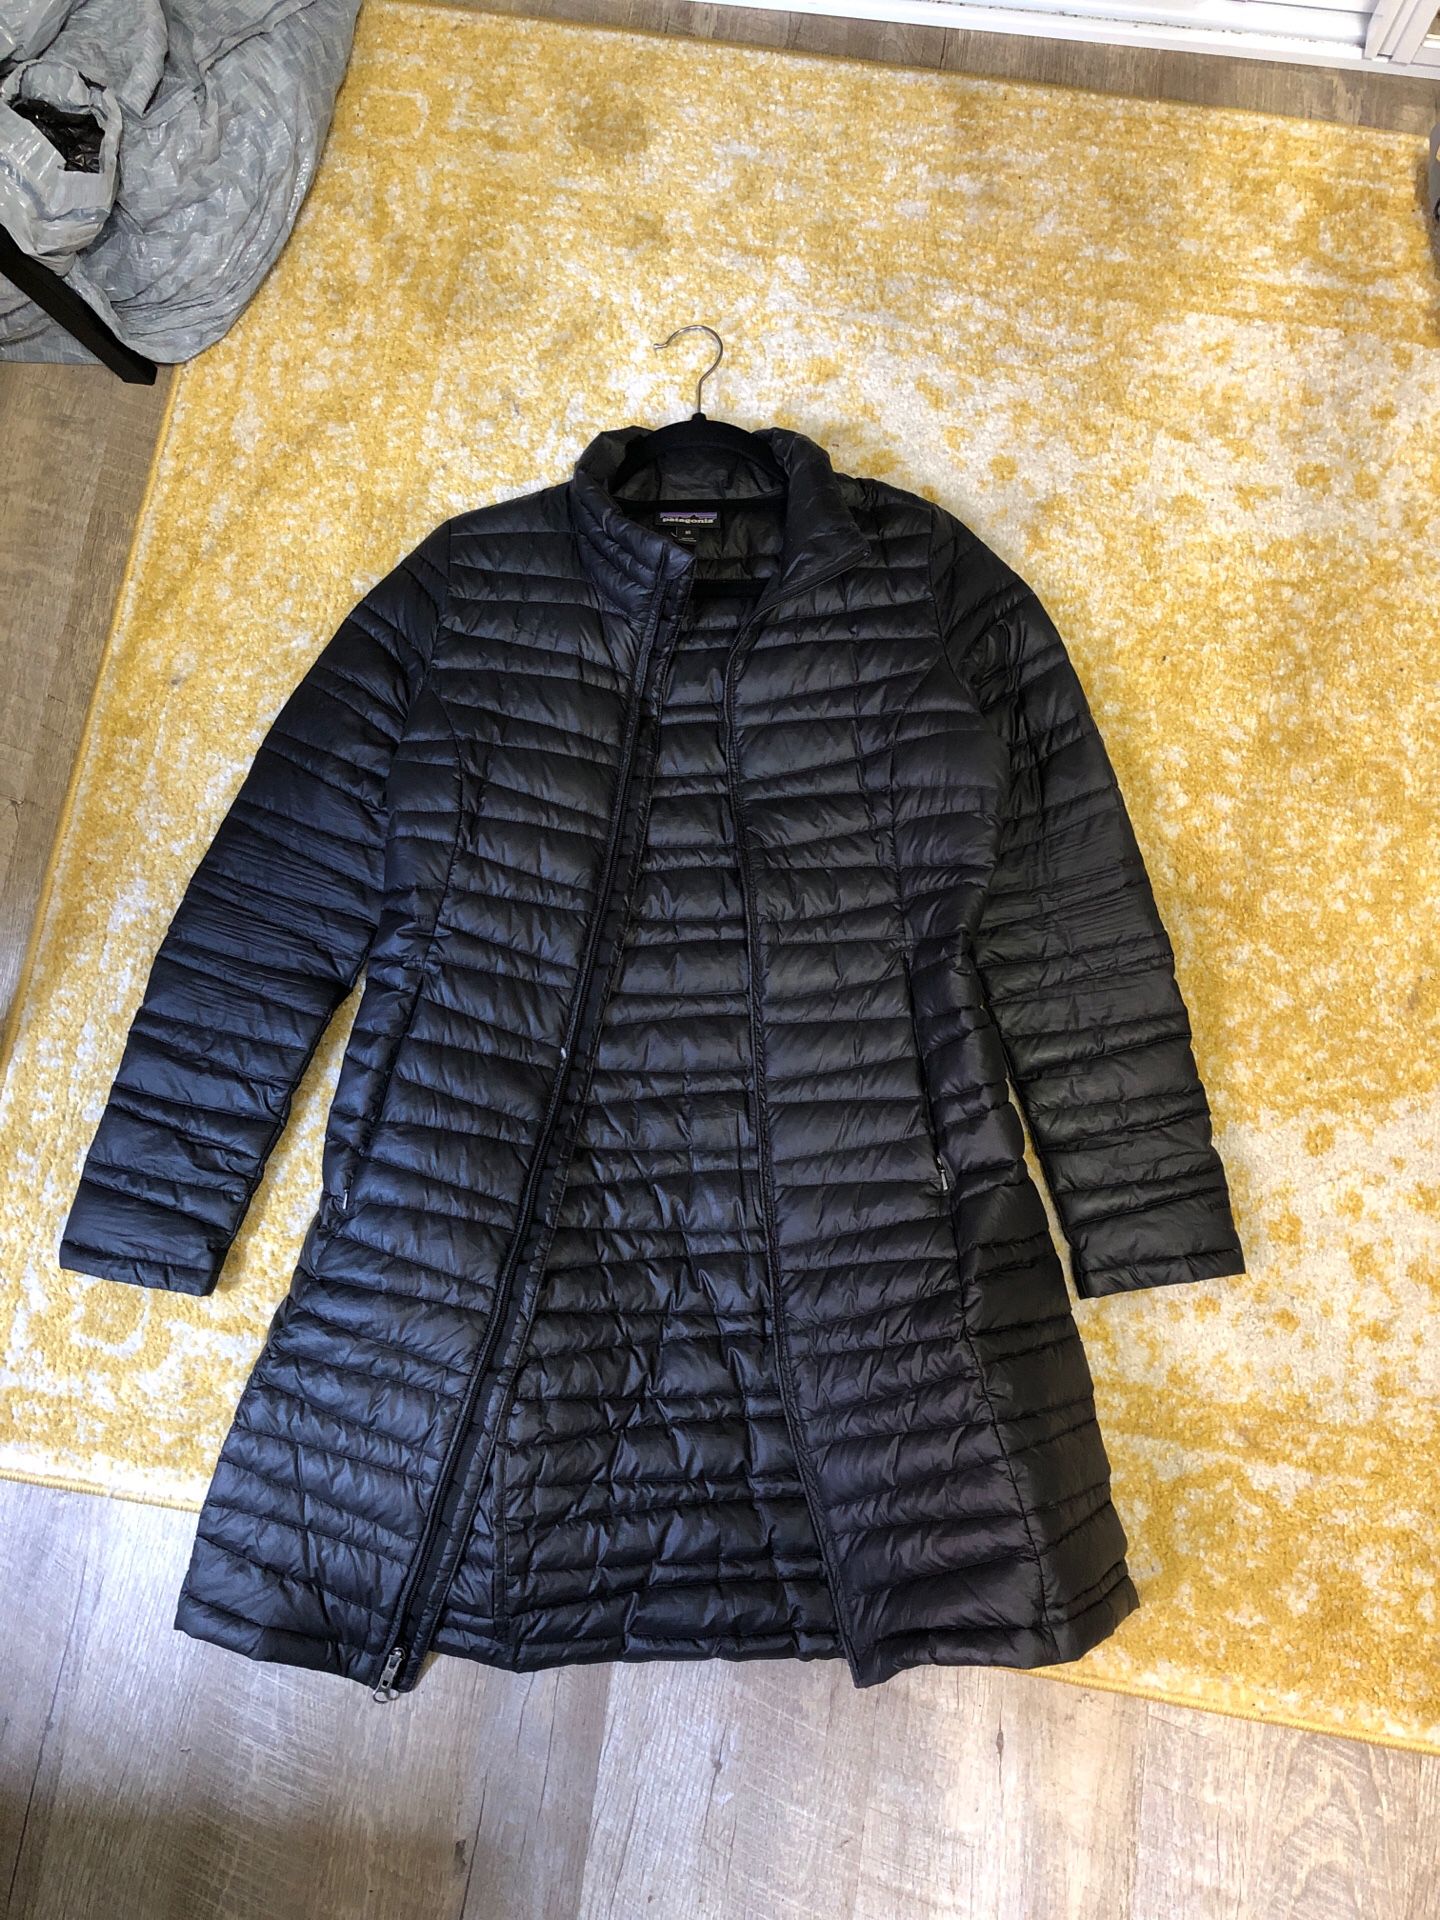 XS women’s Patagonia coat